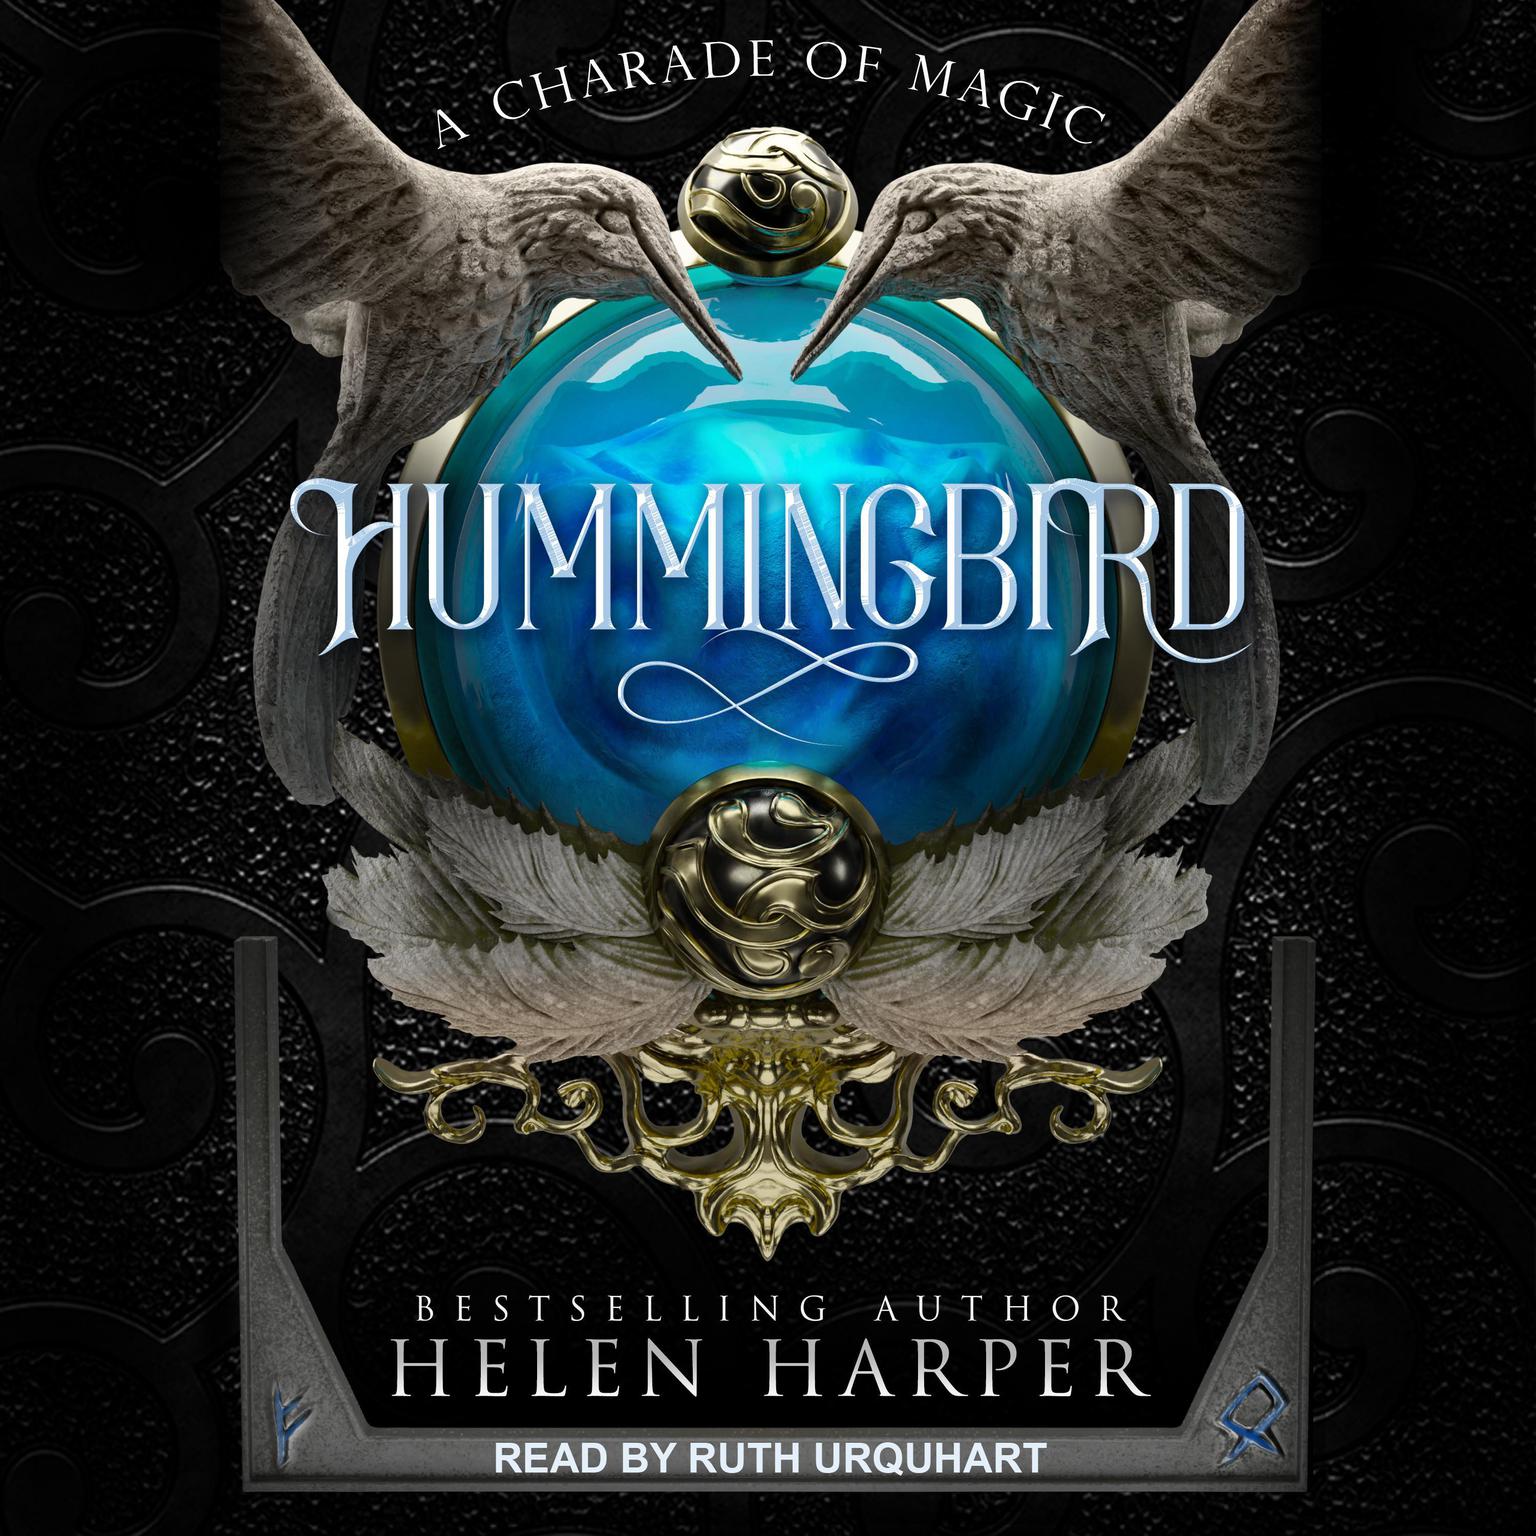 Hummingbird Audiobook, by Helen Harper